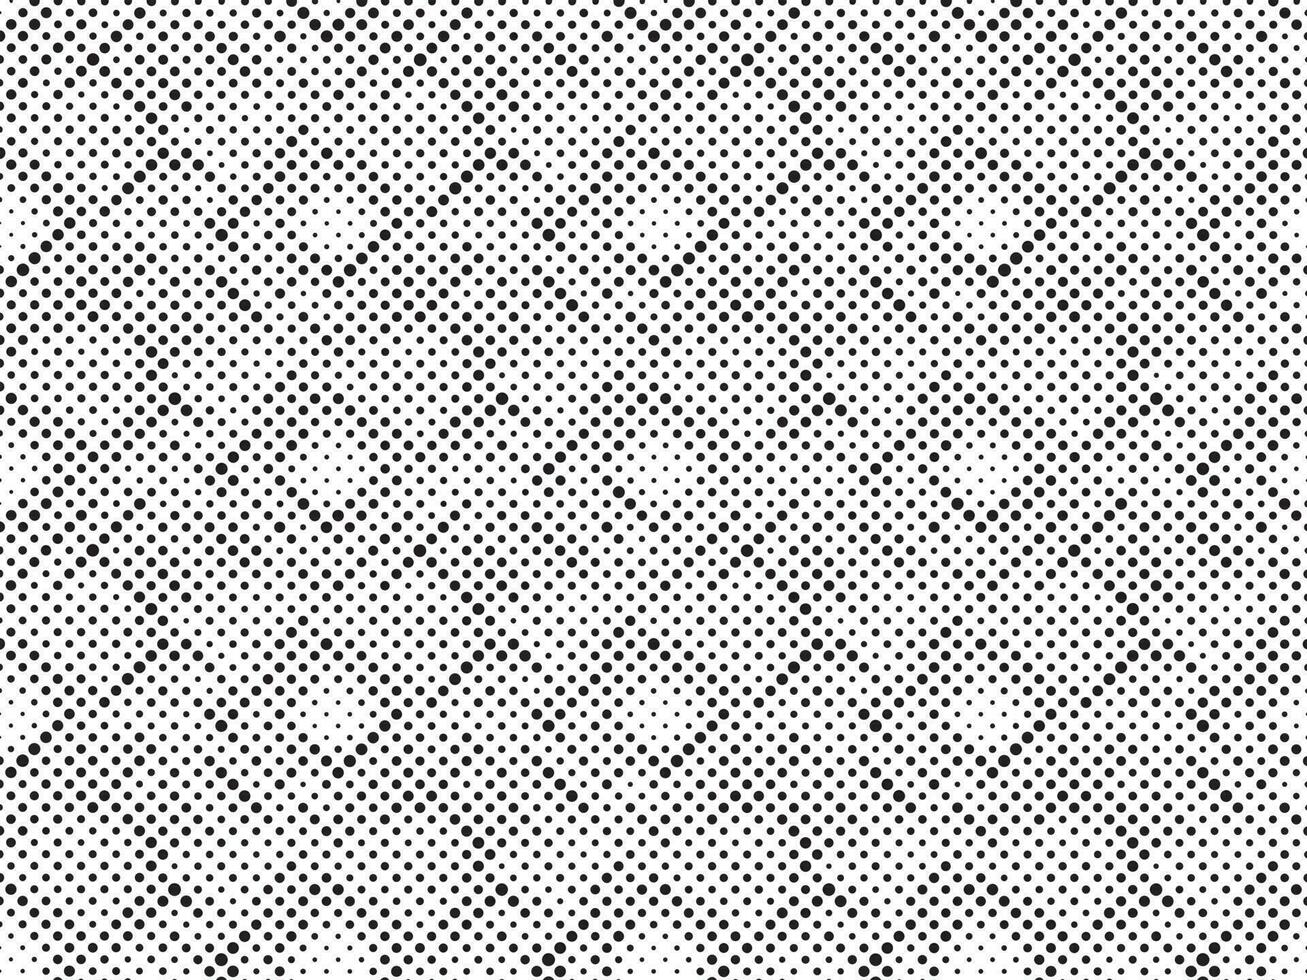 zwart en wit halftone rooster. modern minimalistische meetkundig patroon vector